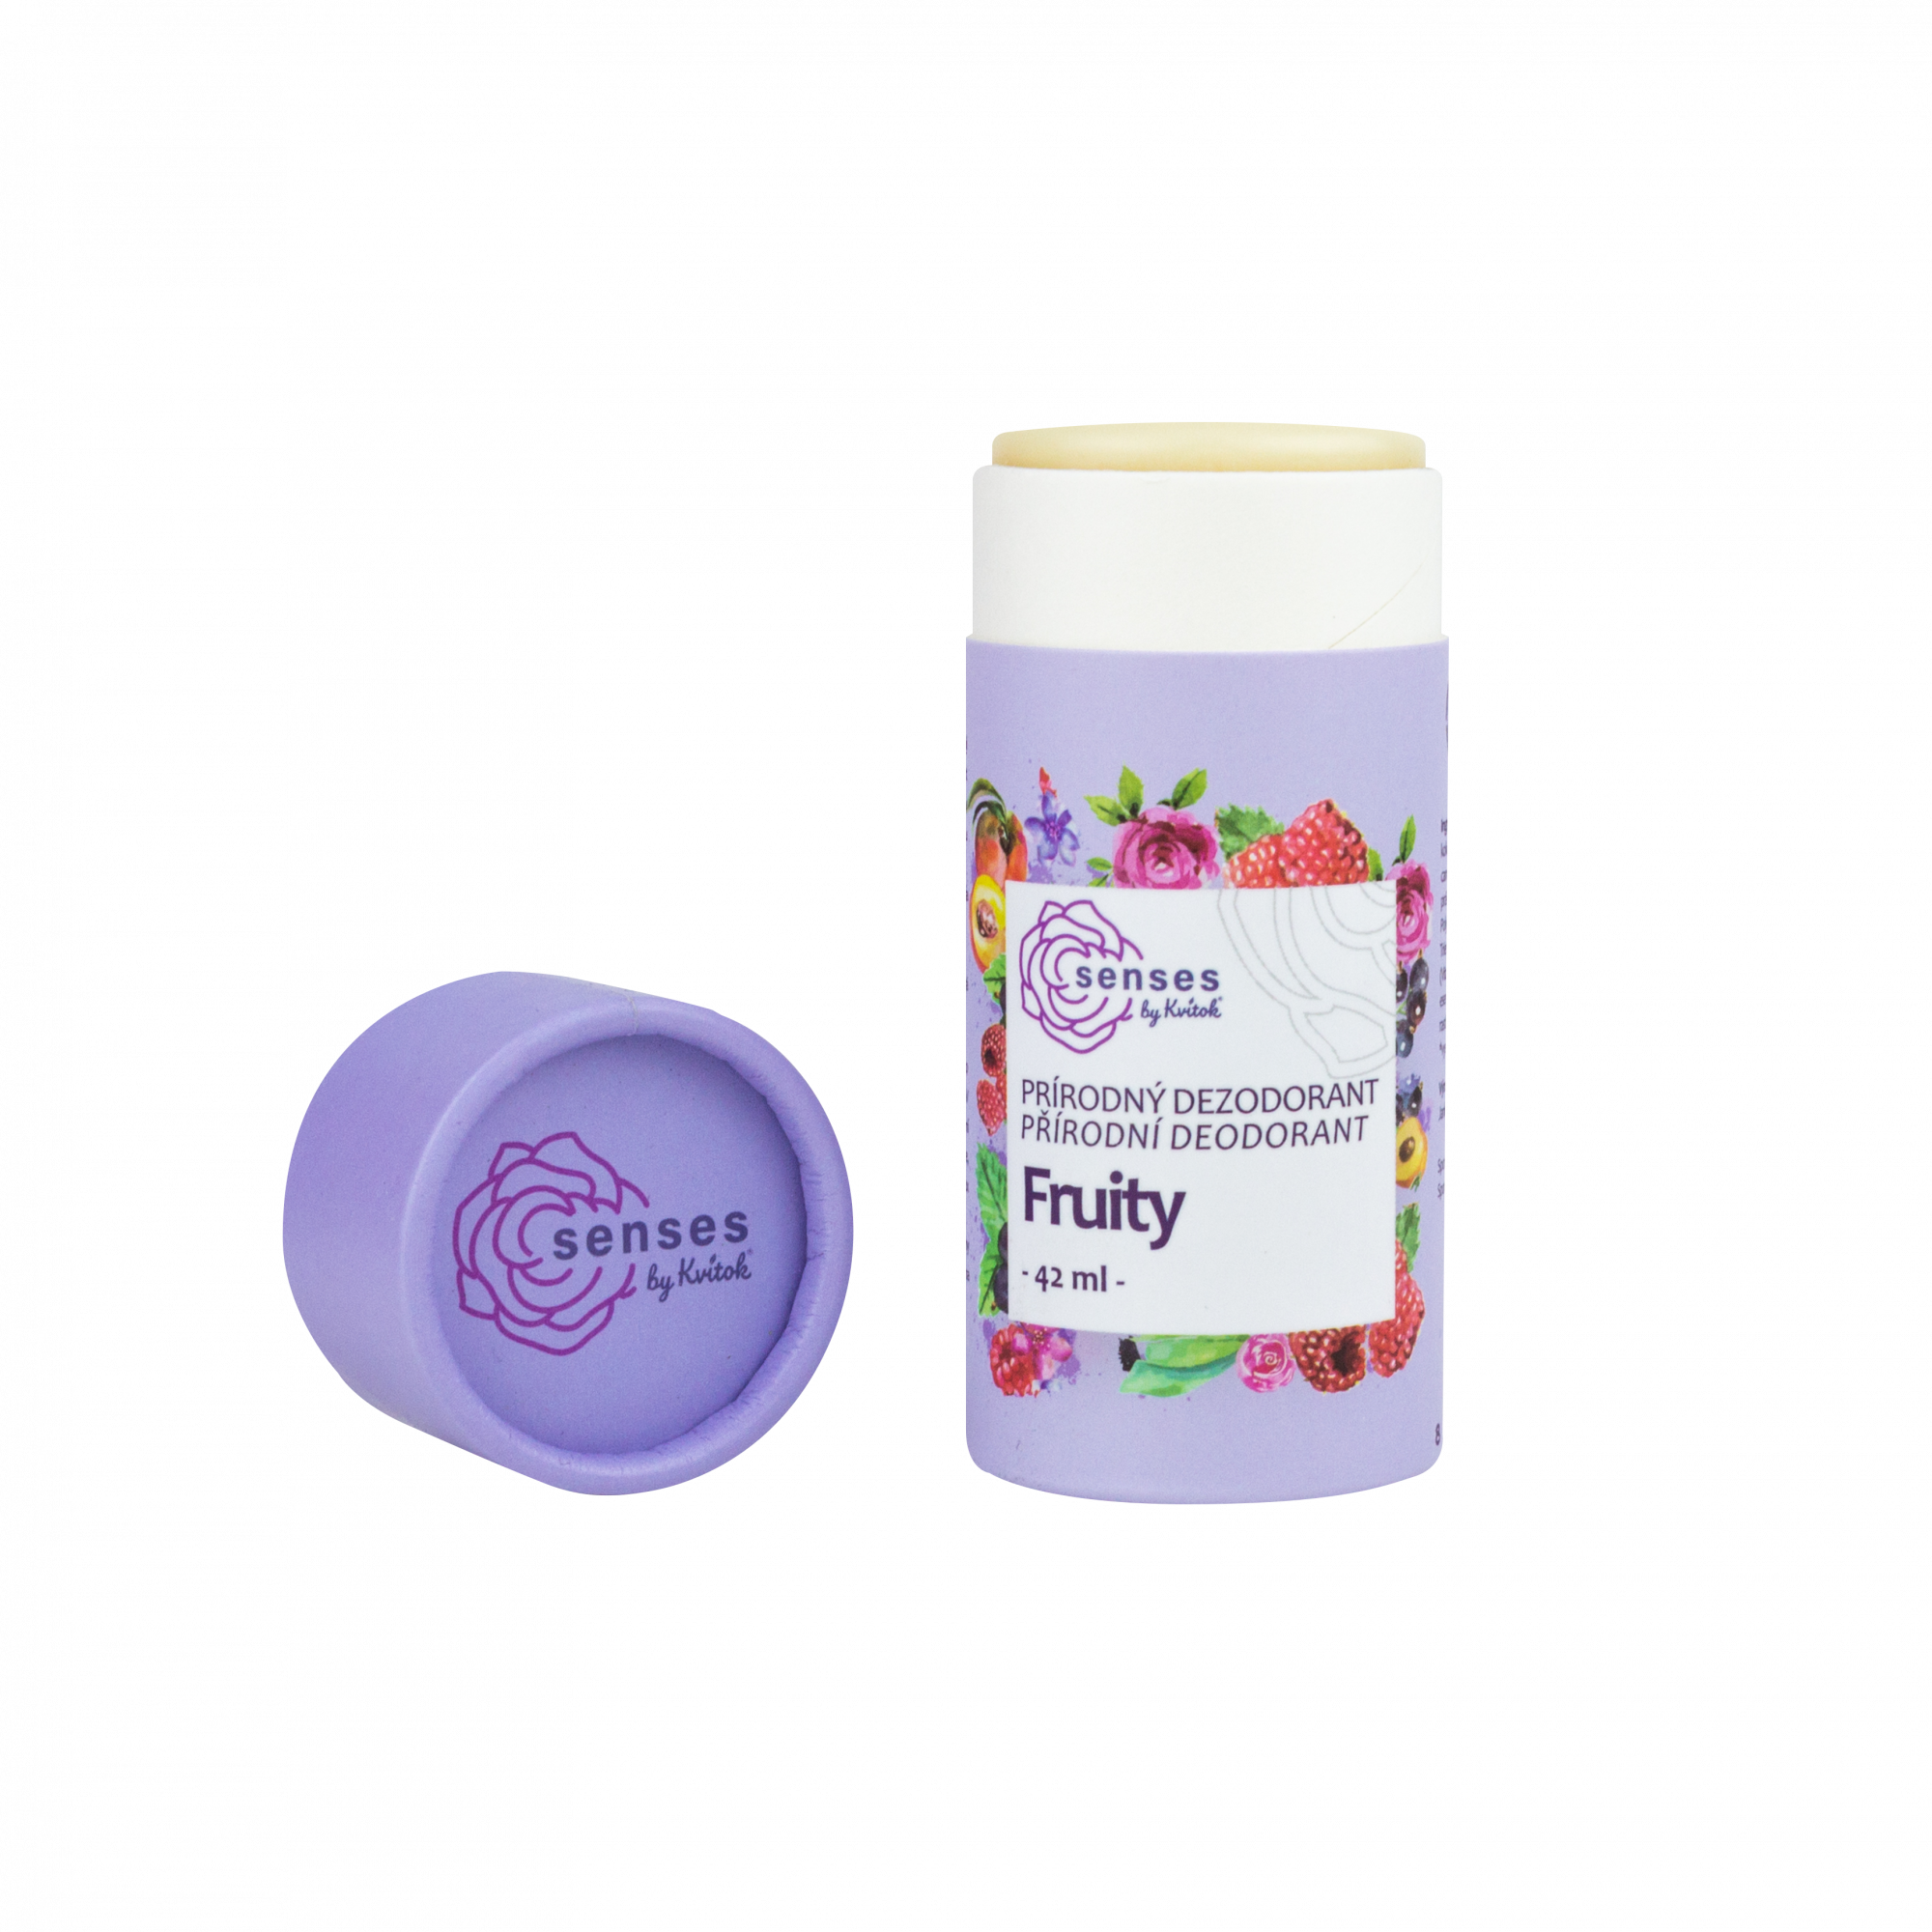 Kvitok Tuhý deodorant Fruity (42 ml) - účinný až 24 hodin Kvitok